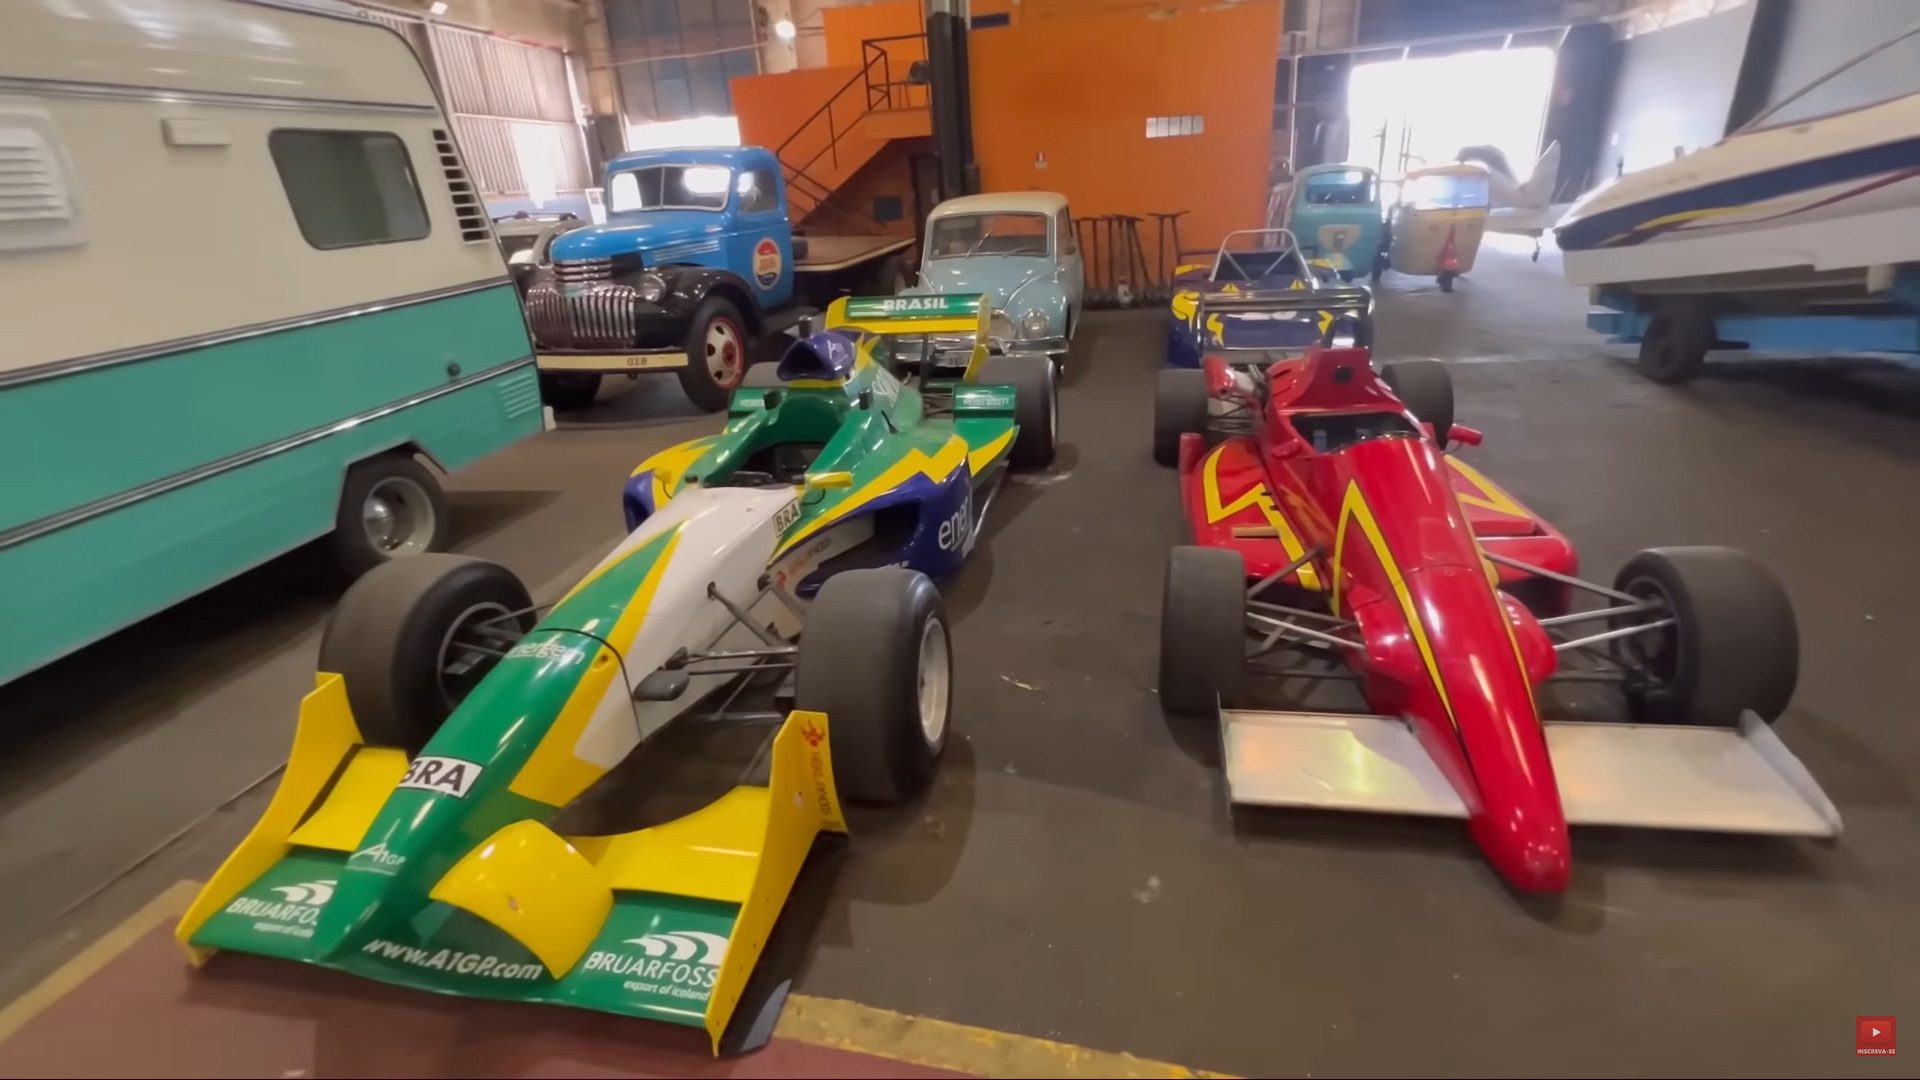 Coleção de Emerson Fittipaldi com carros de corrida e avião será leiloada